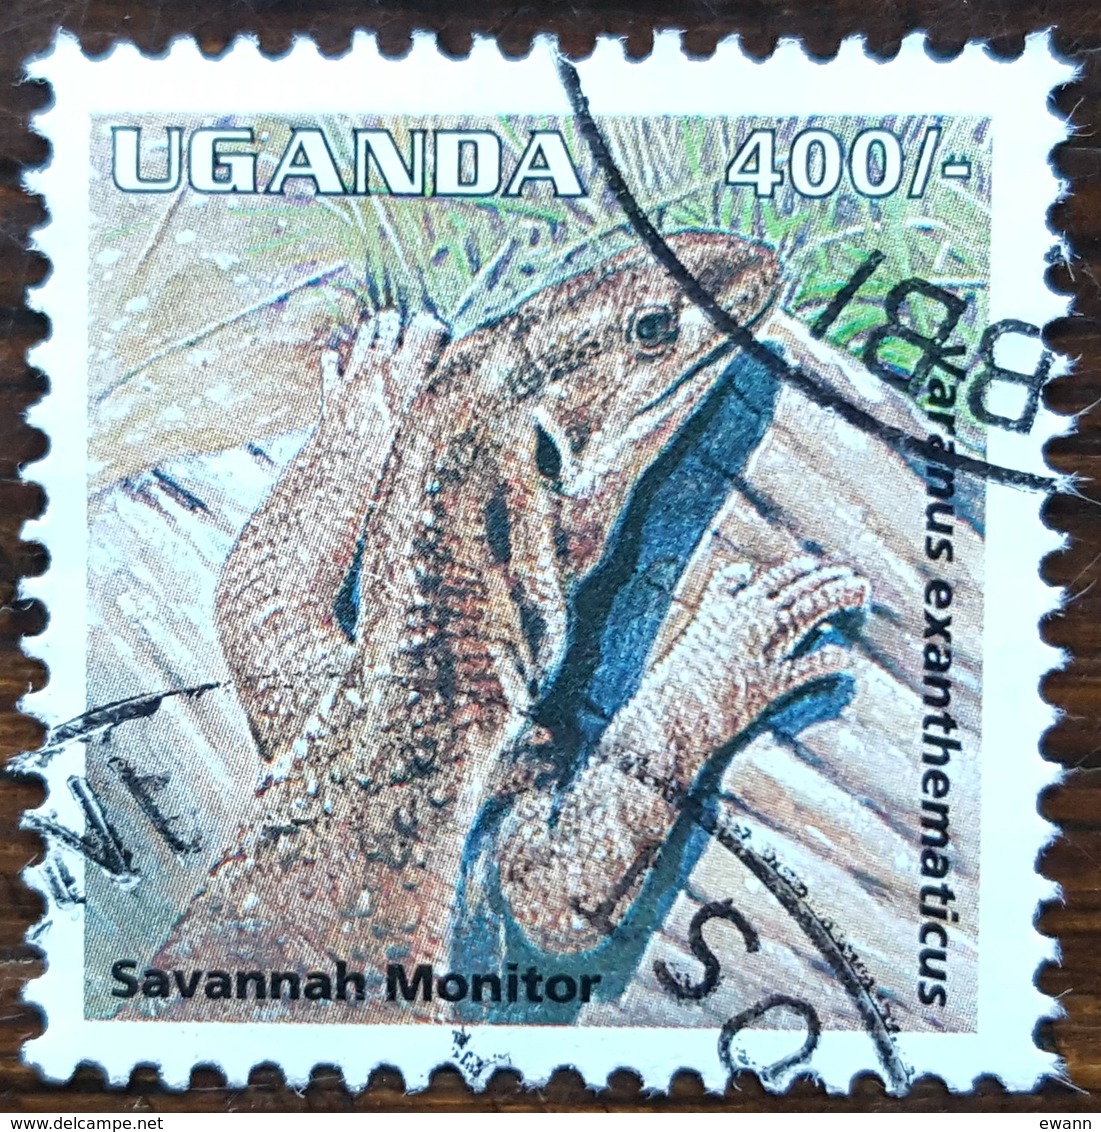 Ouganda - YT N°1236 - Faune / Reptiles - 1995 - Oblitéré - Ouganda (1962-...)